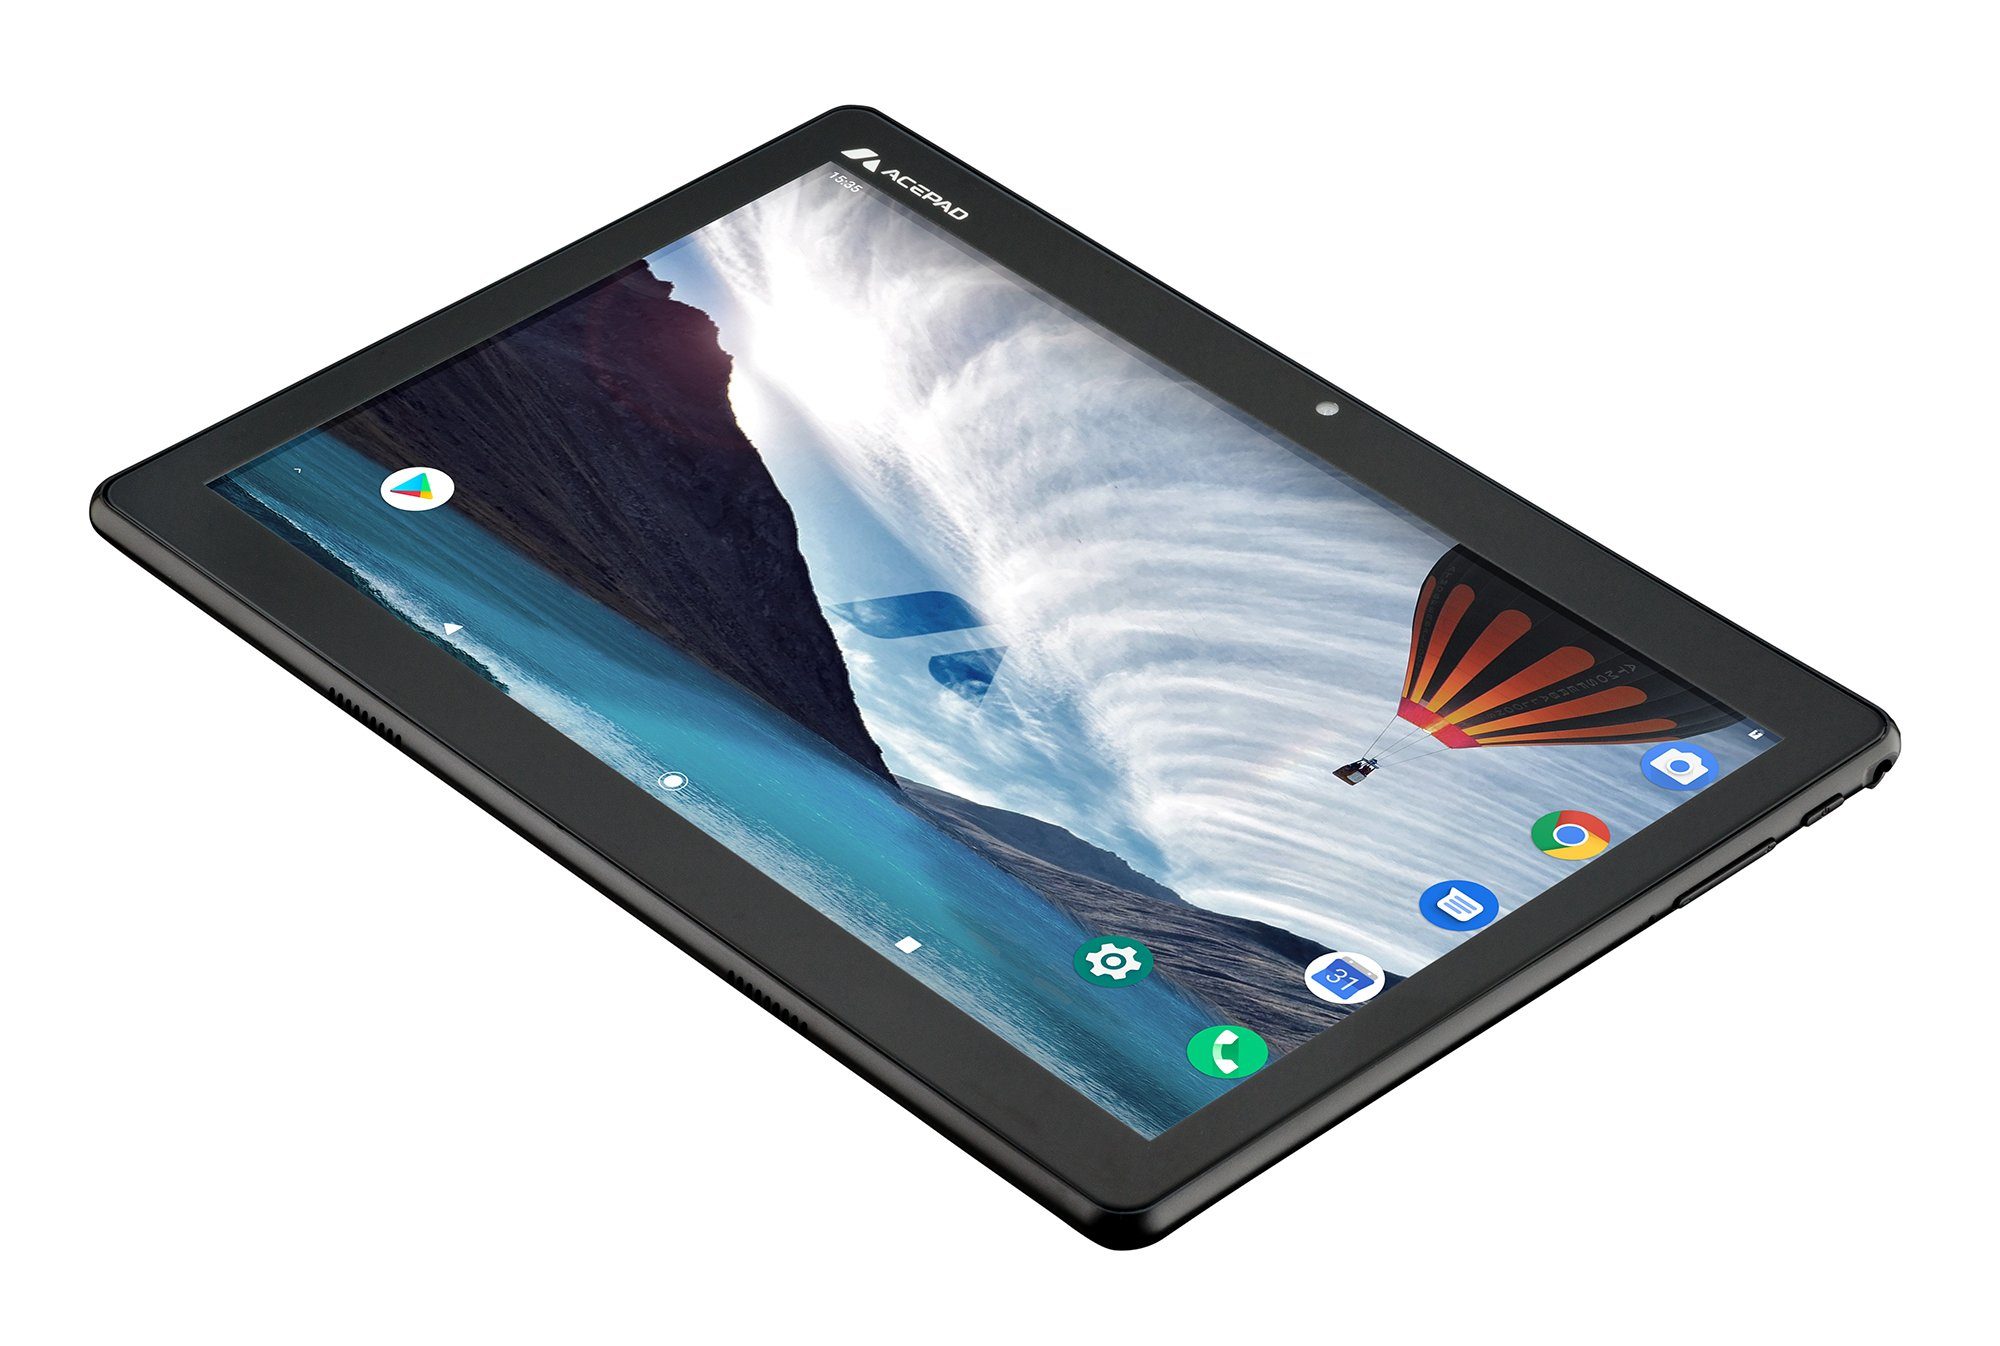 Ram, Full-HD Acepad 128 Bluetooth-Tastatur Android, mit (10,1", 1920x1200, Tablet v2024 Schwarz Wi-Fi, 6GB 4G A145T FHD (LTE), 10", GB, FLEXI Bluetooth-Tastatur "Flexi) mit